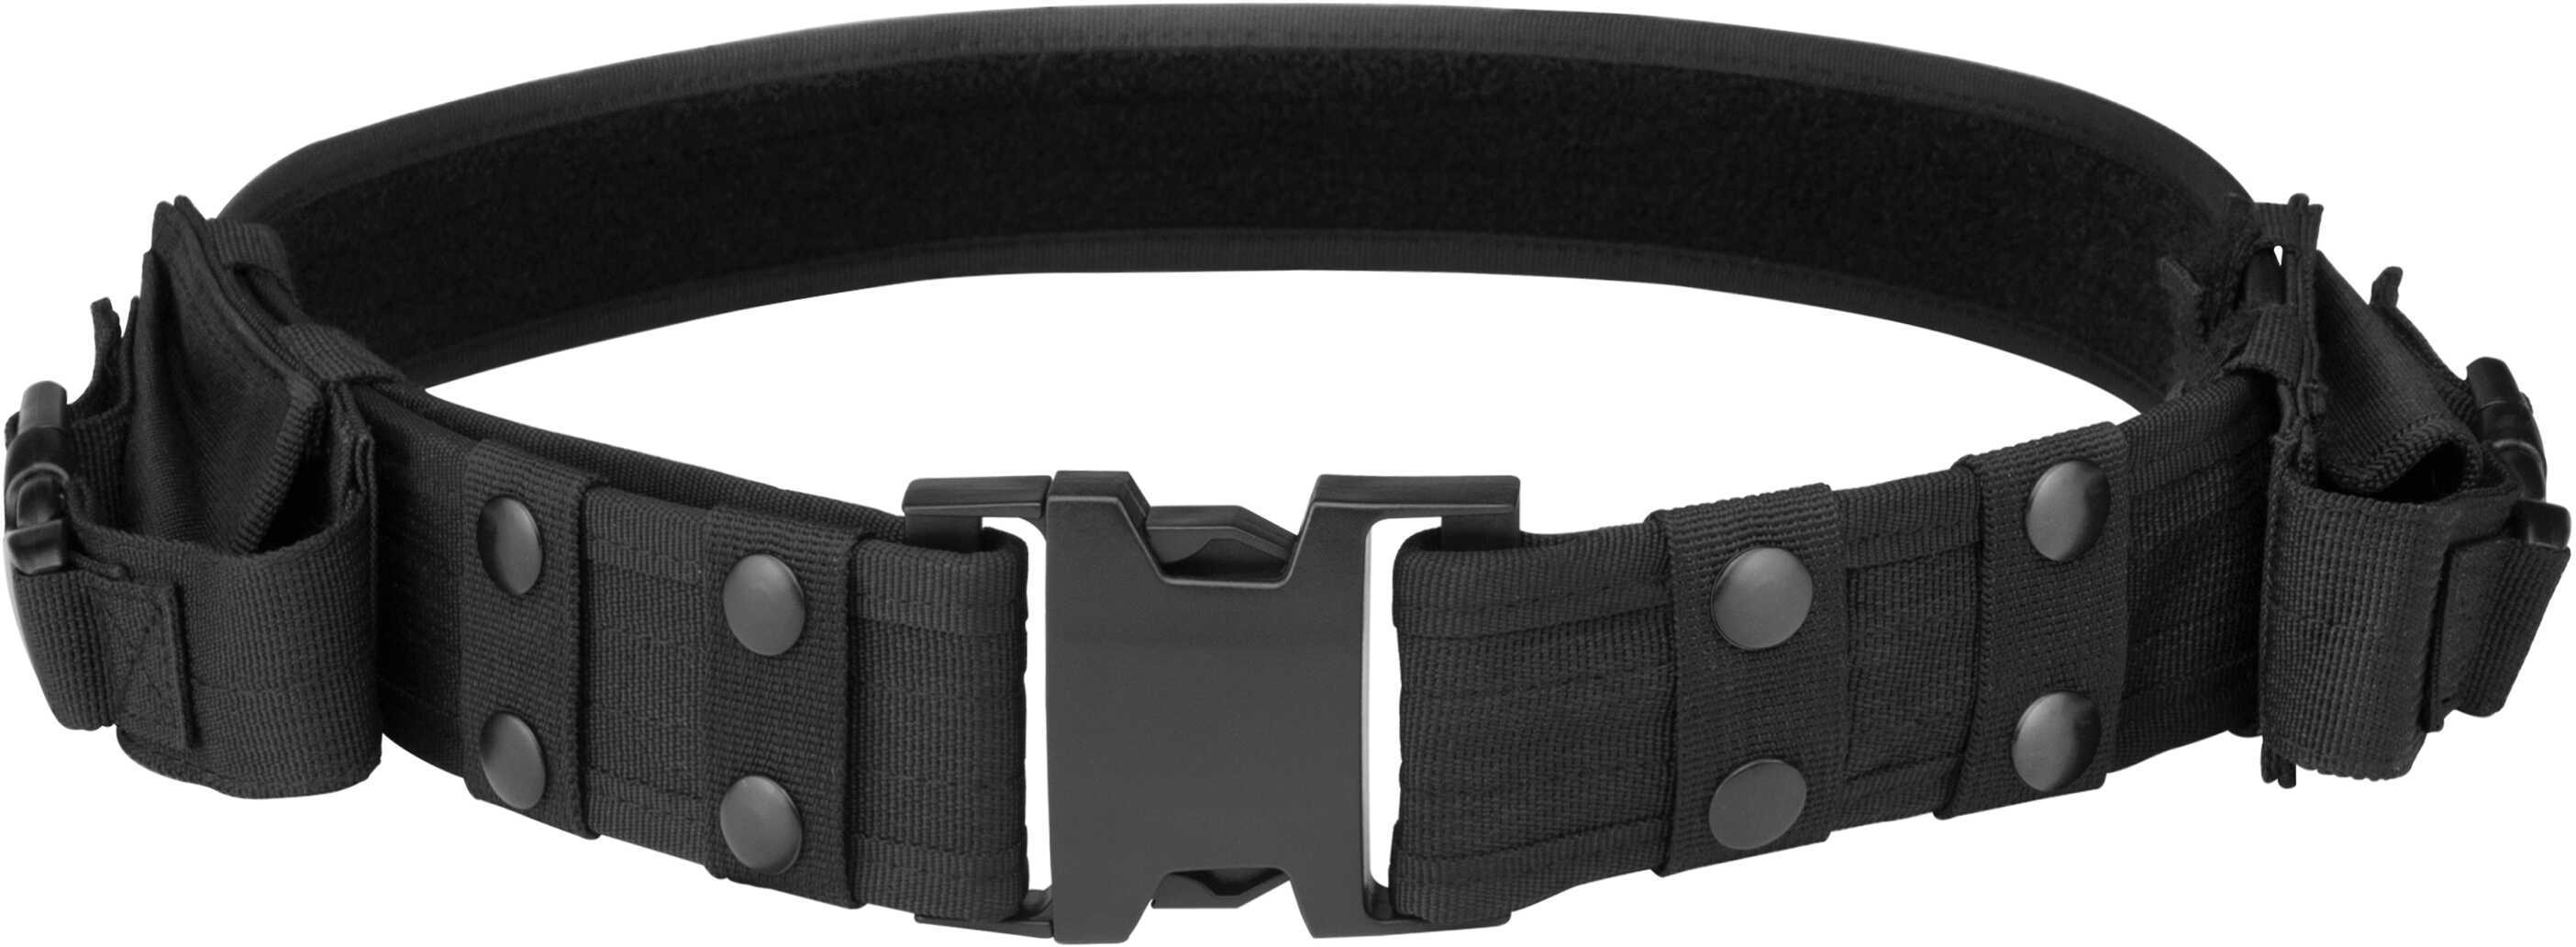 Barska Optics Loaded Gear CX-600 Tactical Belt, Black